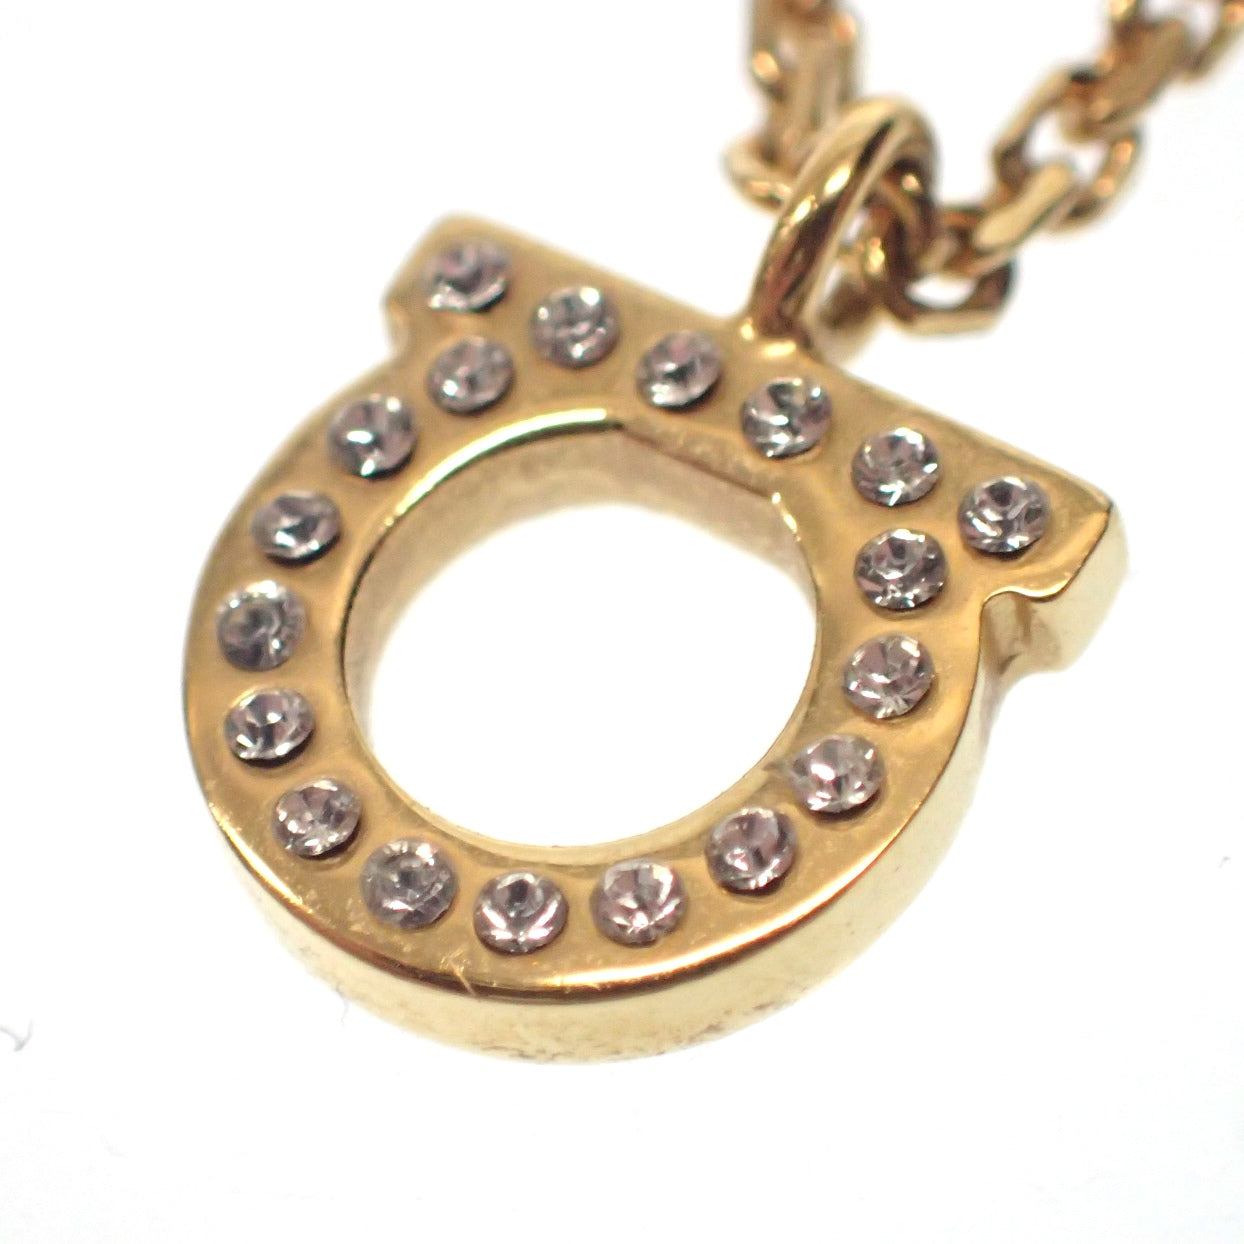 Good condition ◆ Salvatore Ferragamo necklace pendant 696654 Gancini gold series with box Salvatore Ferragamo [AFI18] 